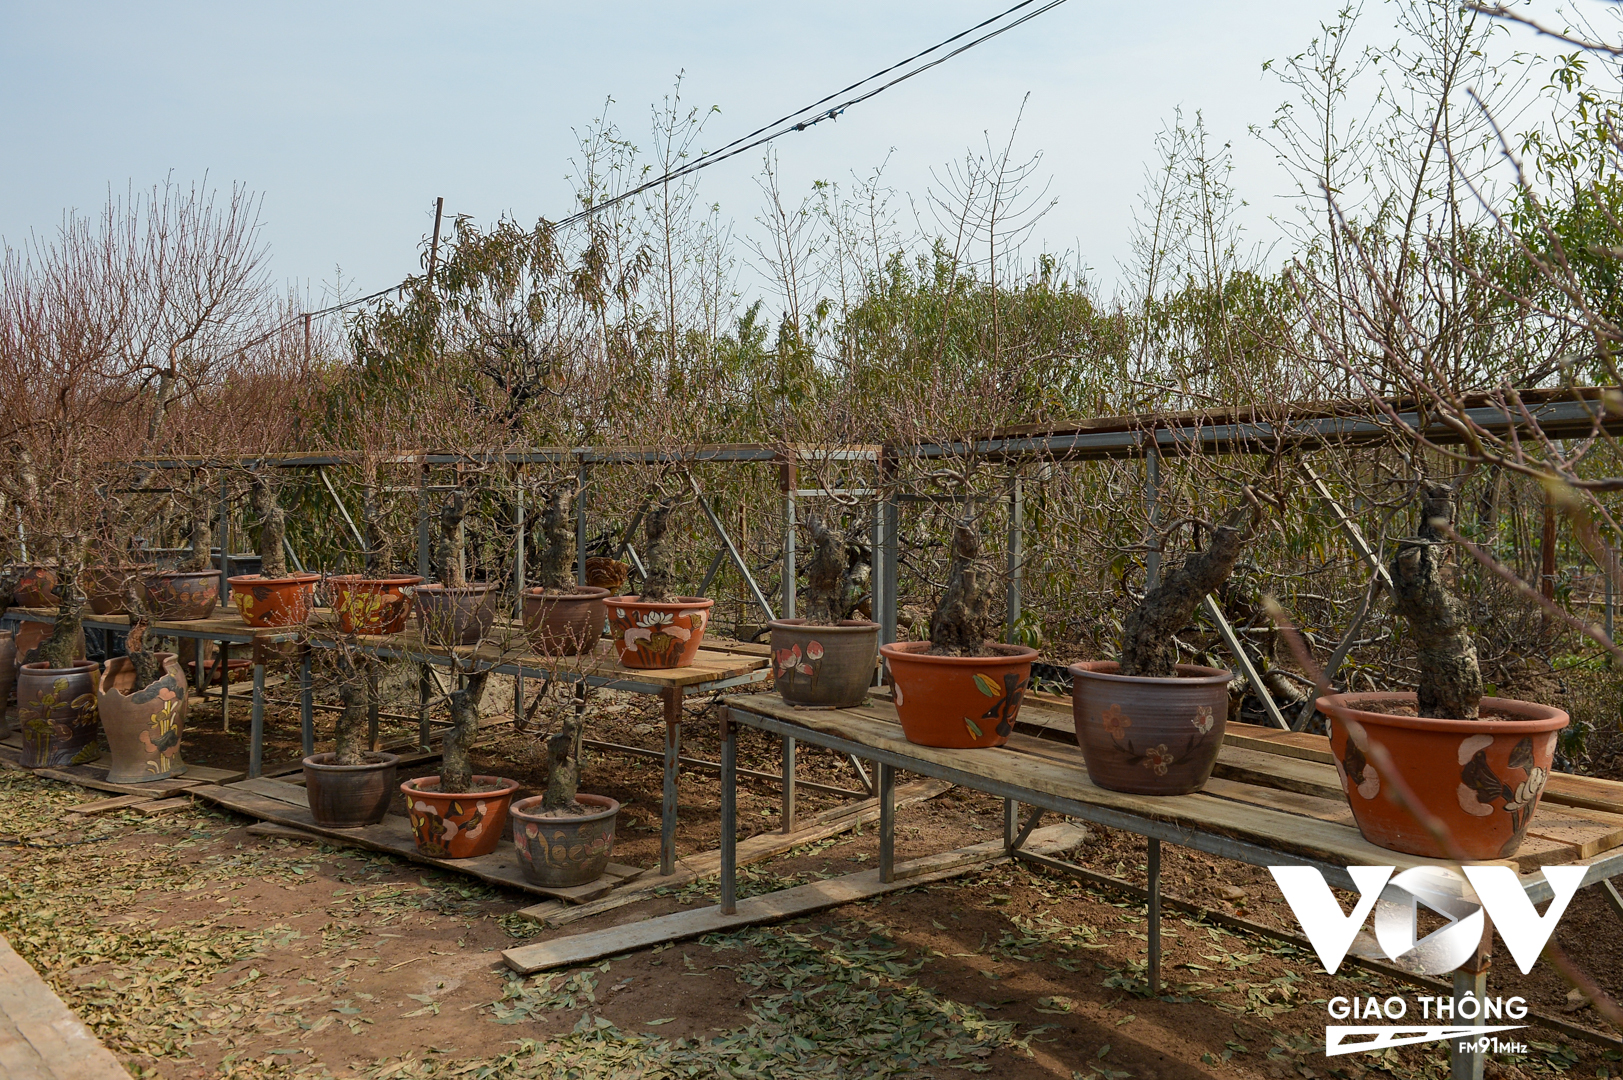 Năm nay, nhiều nhà vườn tại làng đào Nhật Tân đã tạo nhiều sản phẩm đào chơi tết mới, đủ kích cỡ từ to đến nhỏ. Chậu trồng đào cũng được nhà vườn lựa chọn nhiều mẫu từ chậu đất, chum,...đến các loại chậu xi măng tự làm.